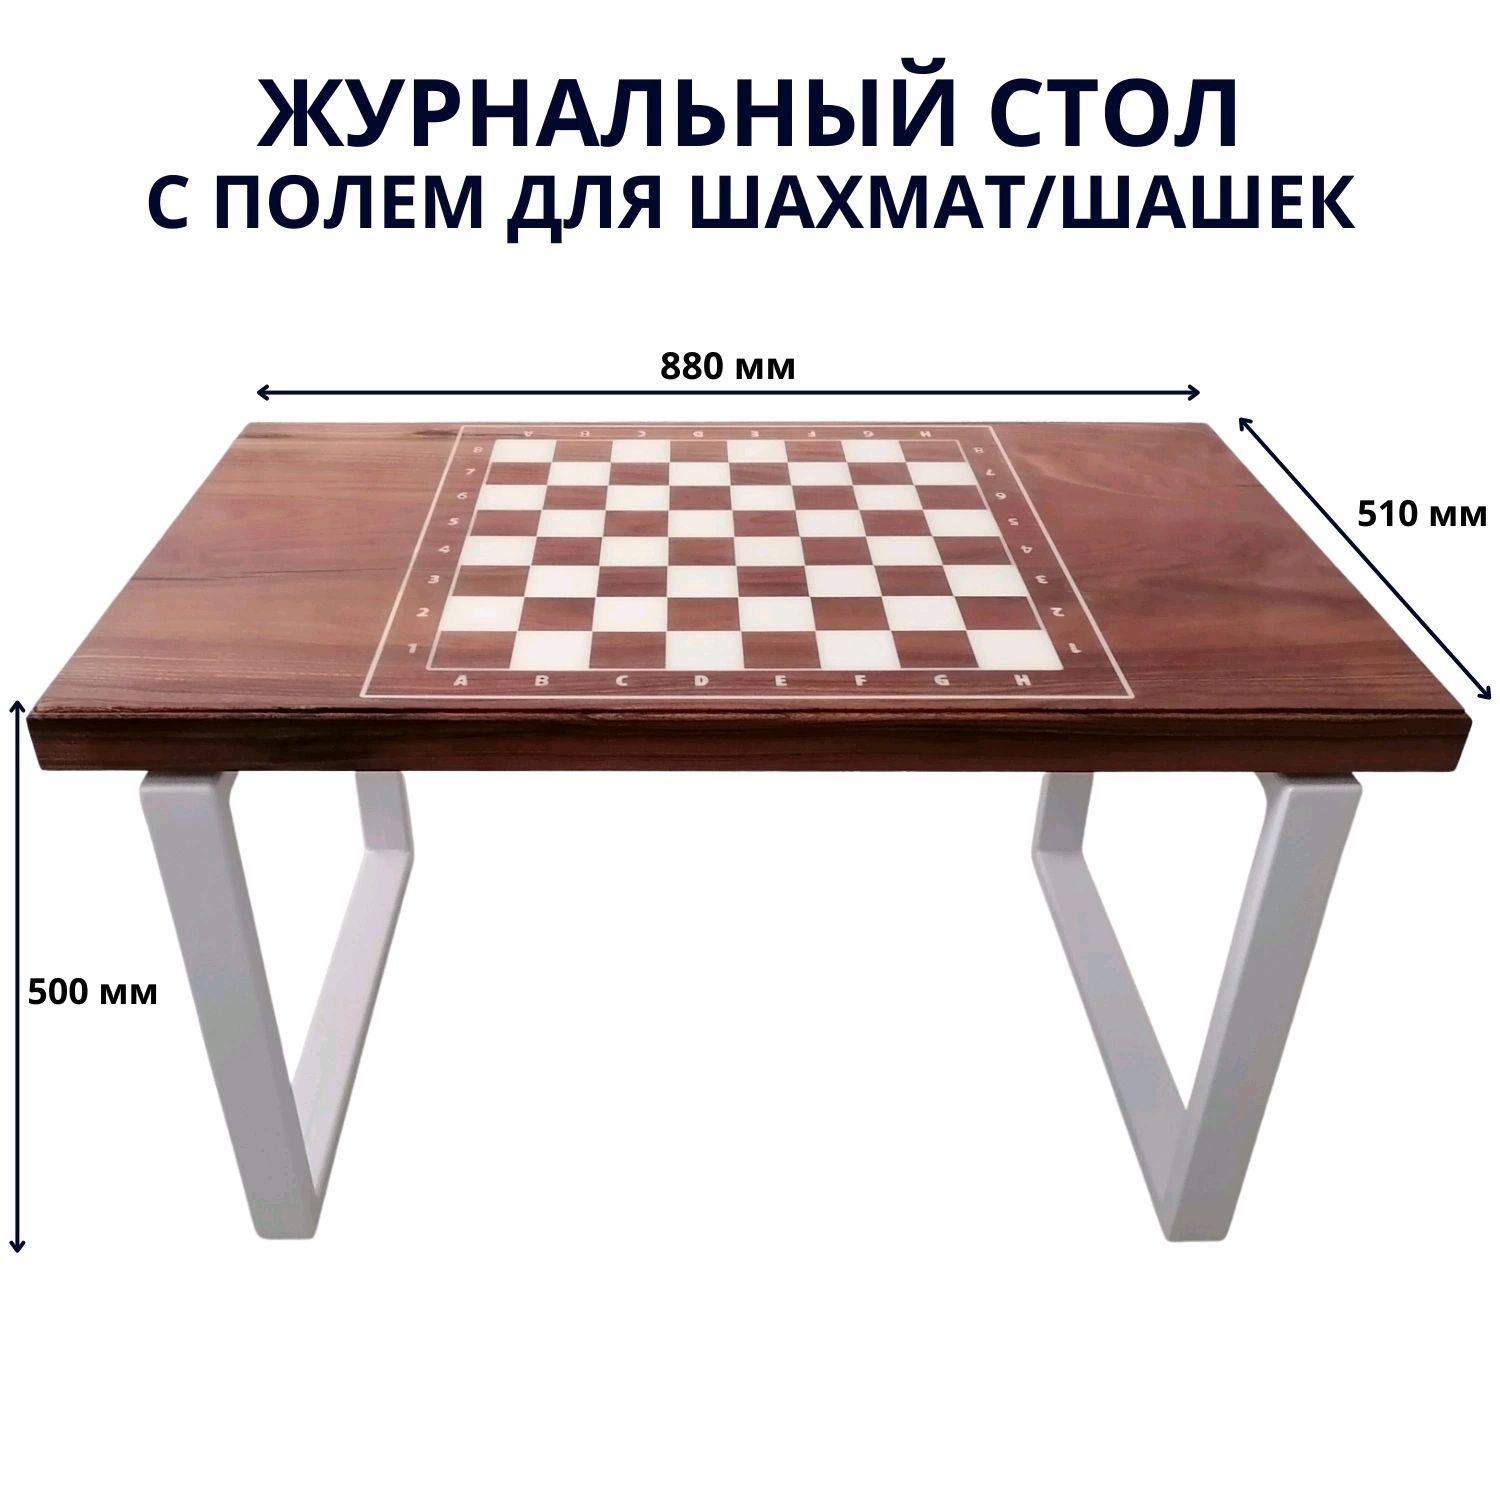 Шахматный столик своими руками из ДВП | Онлайн-журнал о ремонте и дизайне